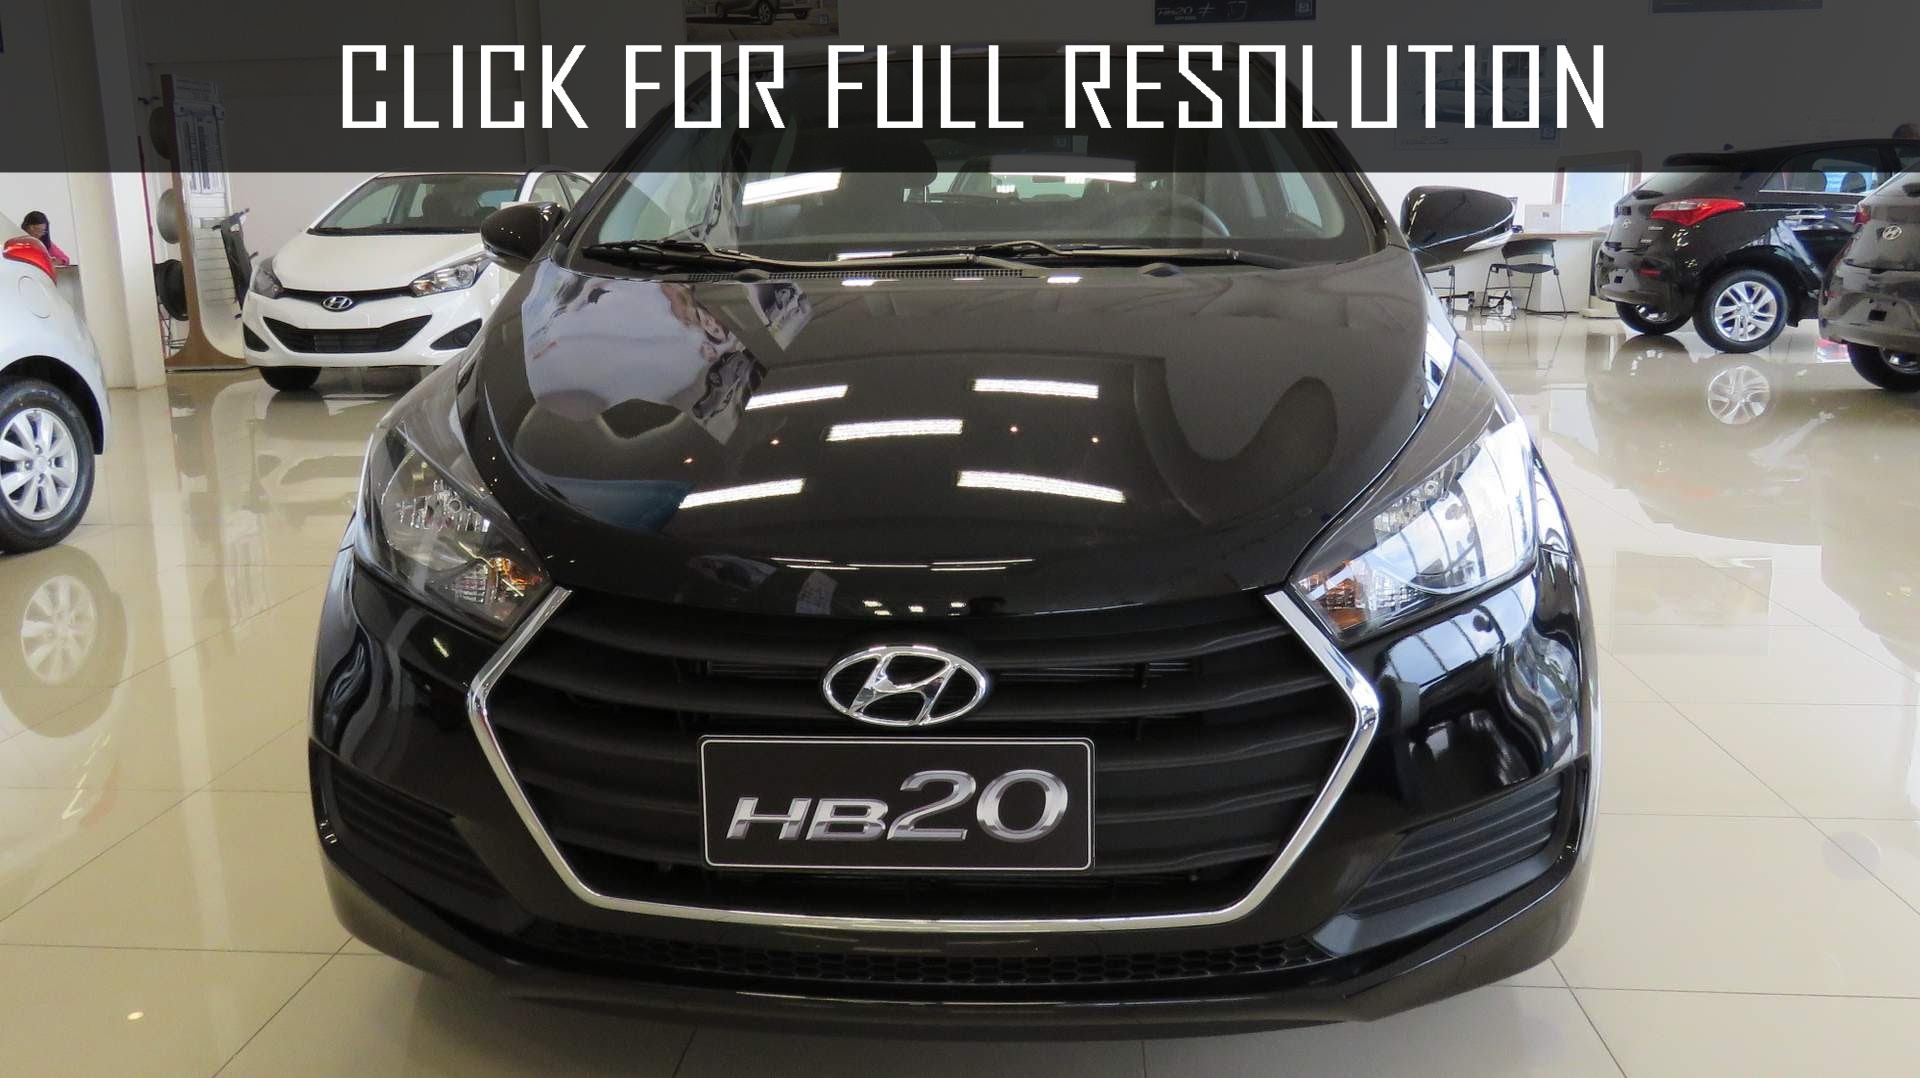 Hyundai Hb20 2016